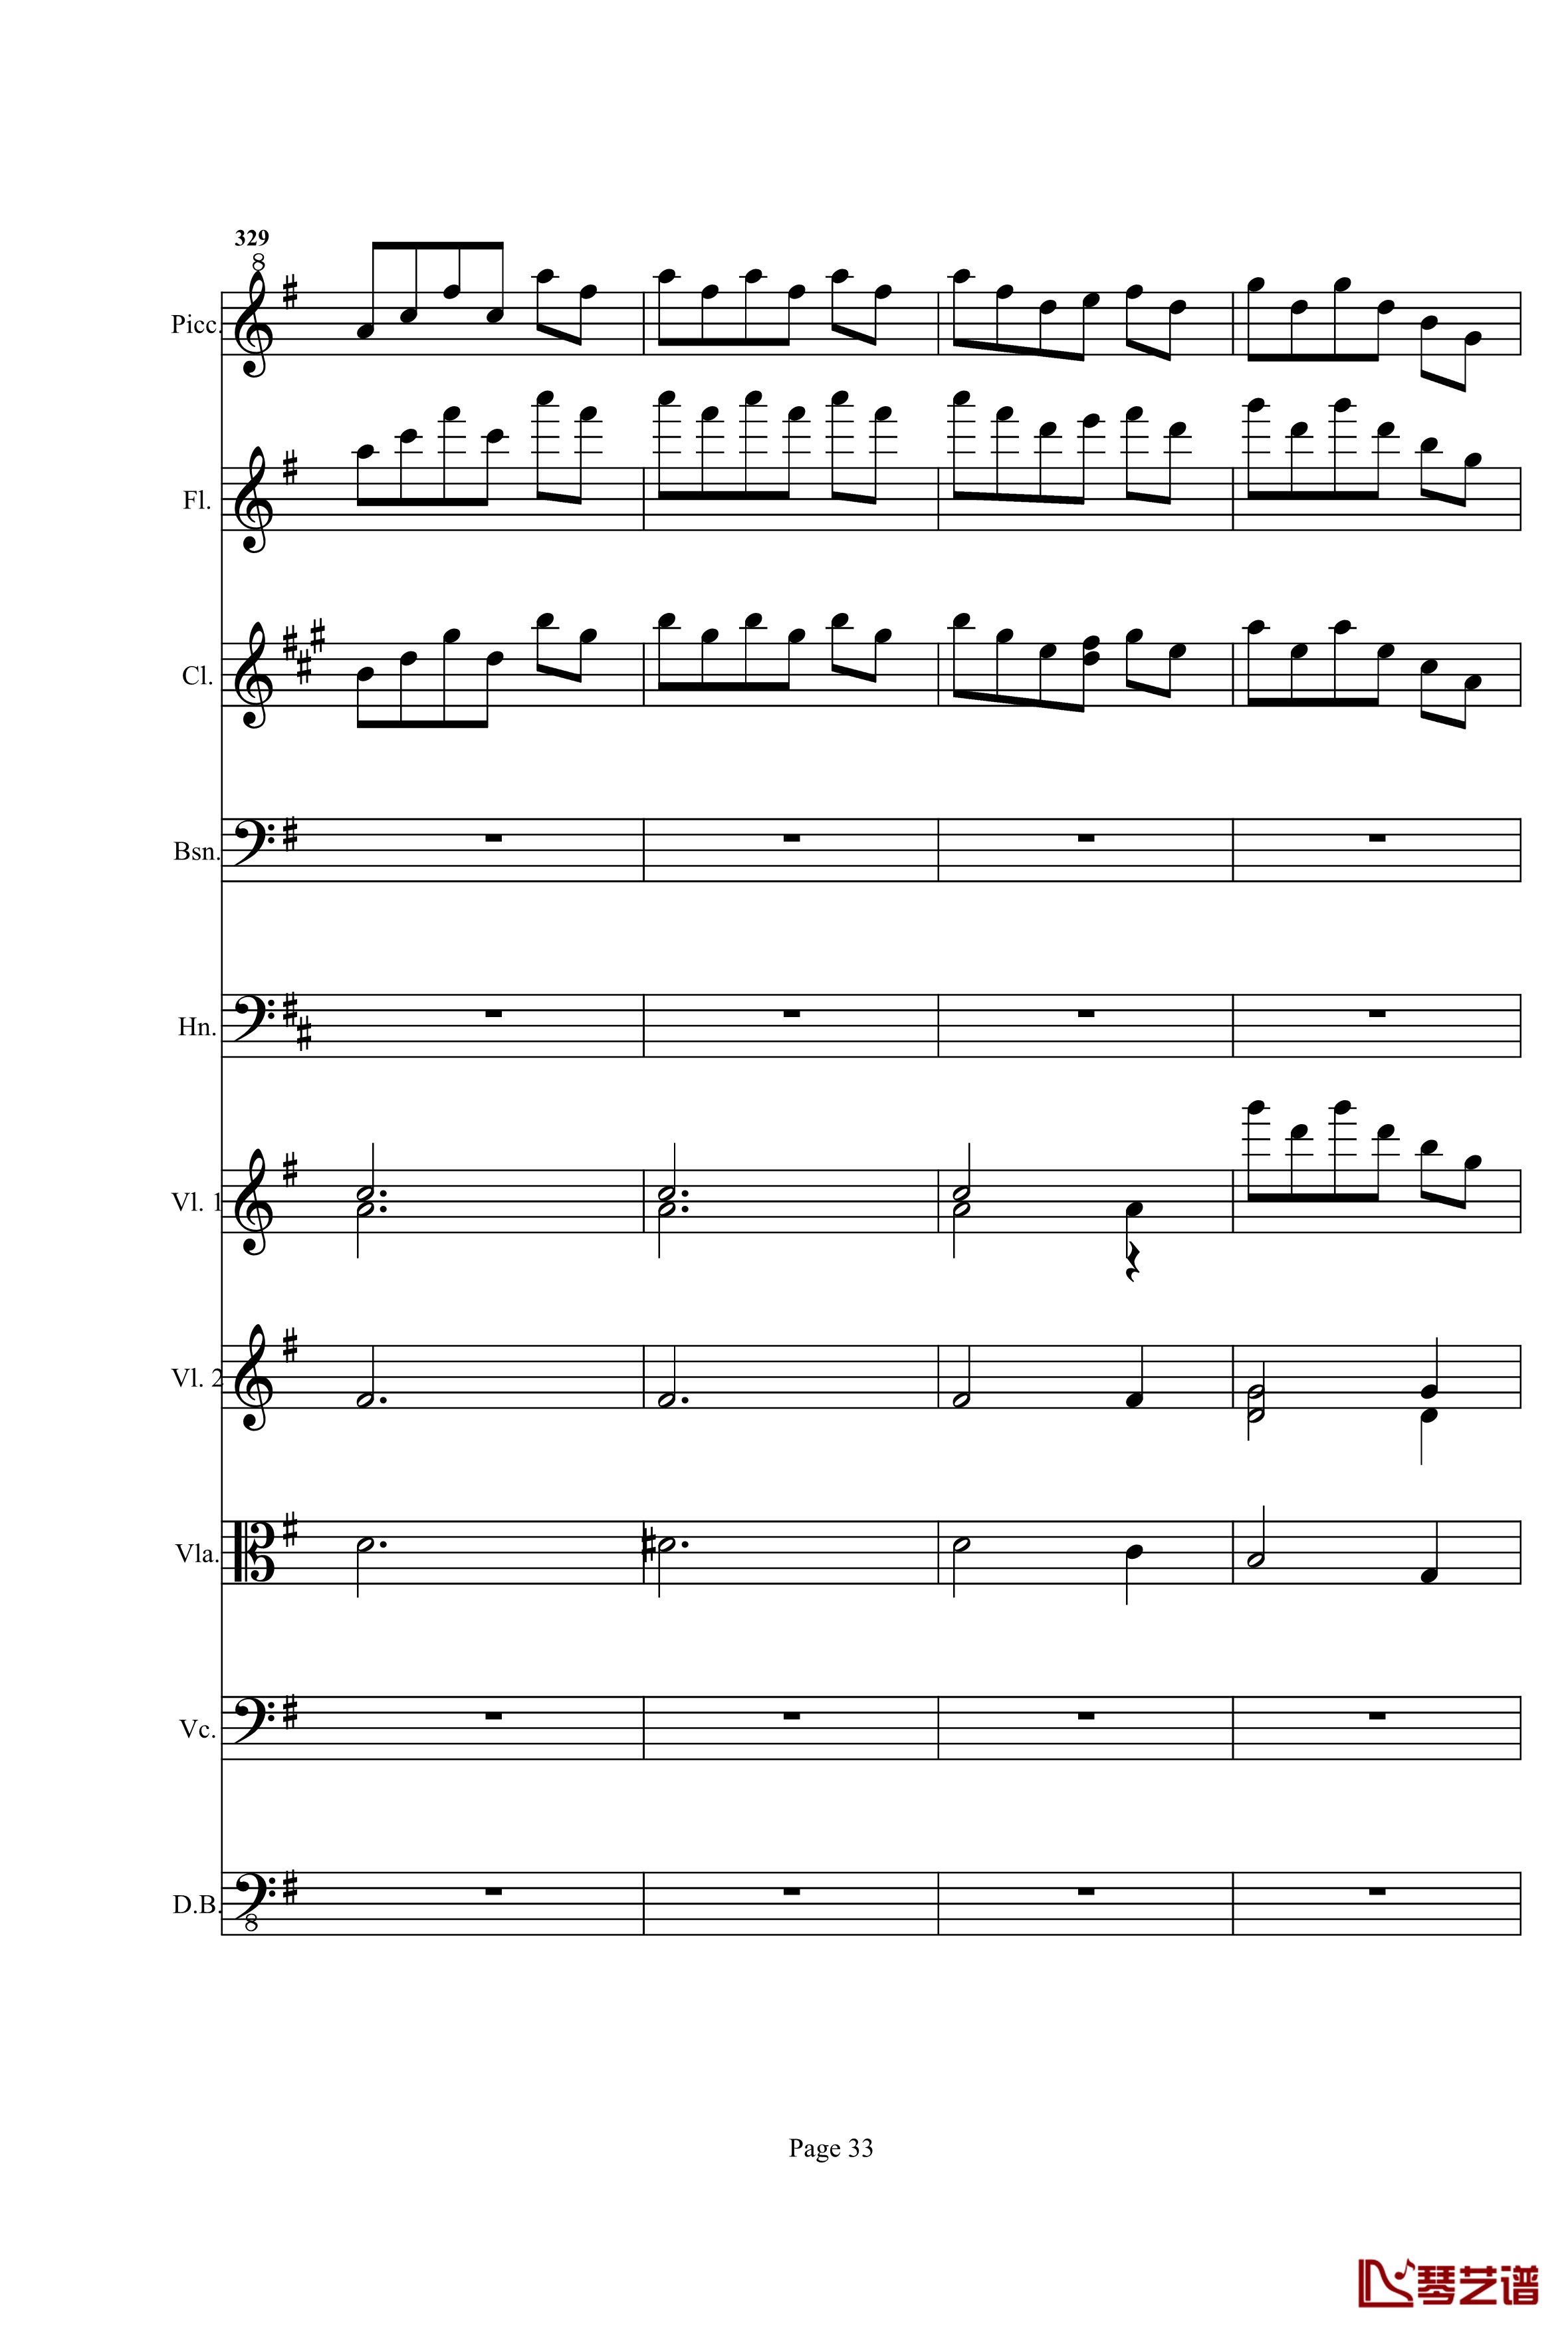 奏鸣曲之交响钢琴谱-第25首-Ⅰ-贝多芬-beethoven33